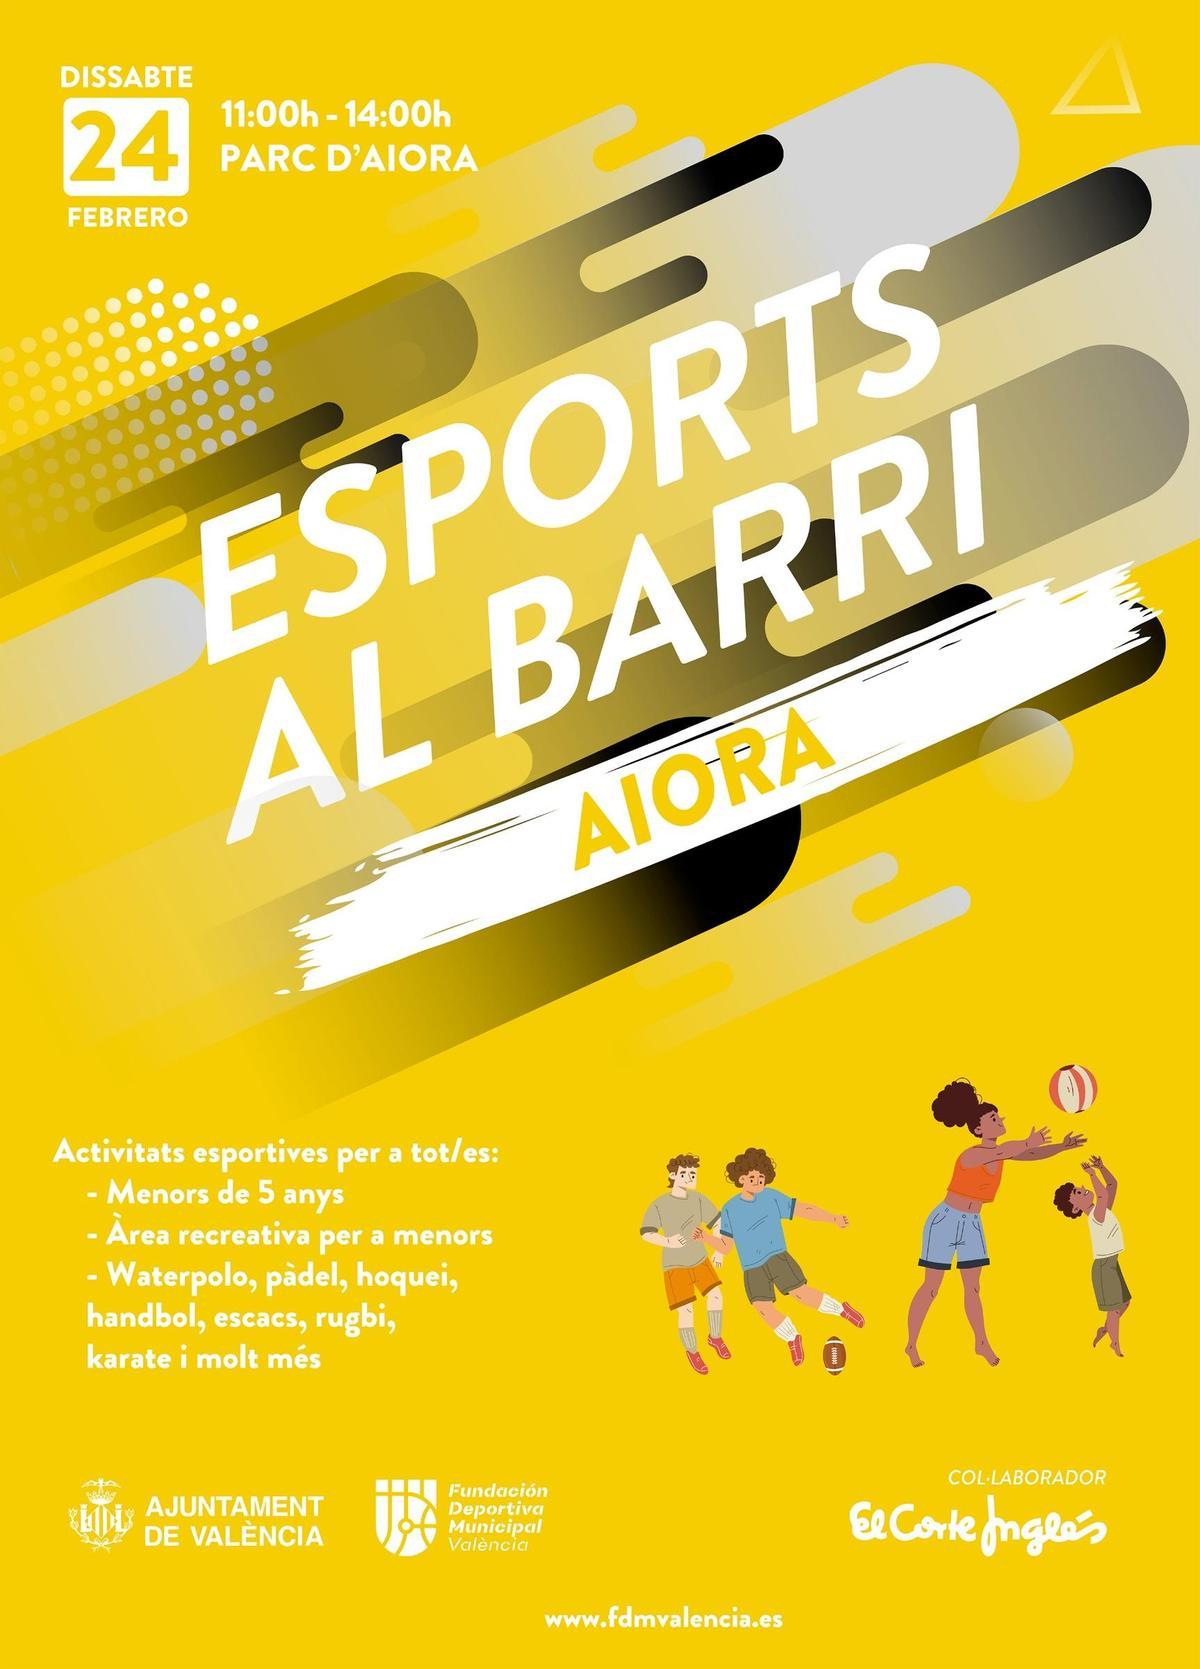 Esports al barri Cartel y su cártel de presentación para este sábado 24 de febrero